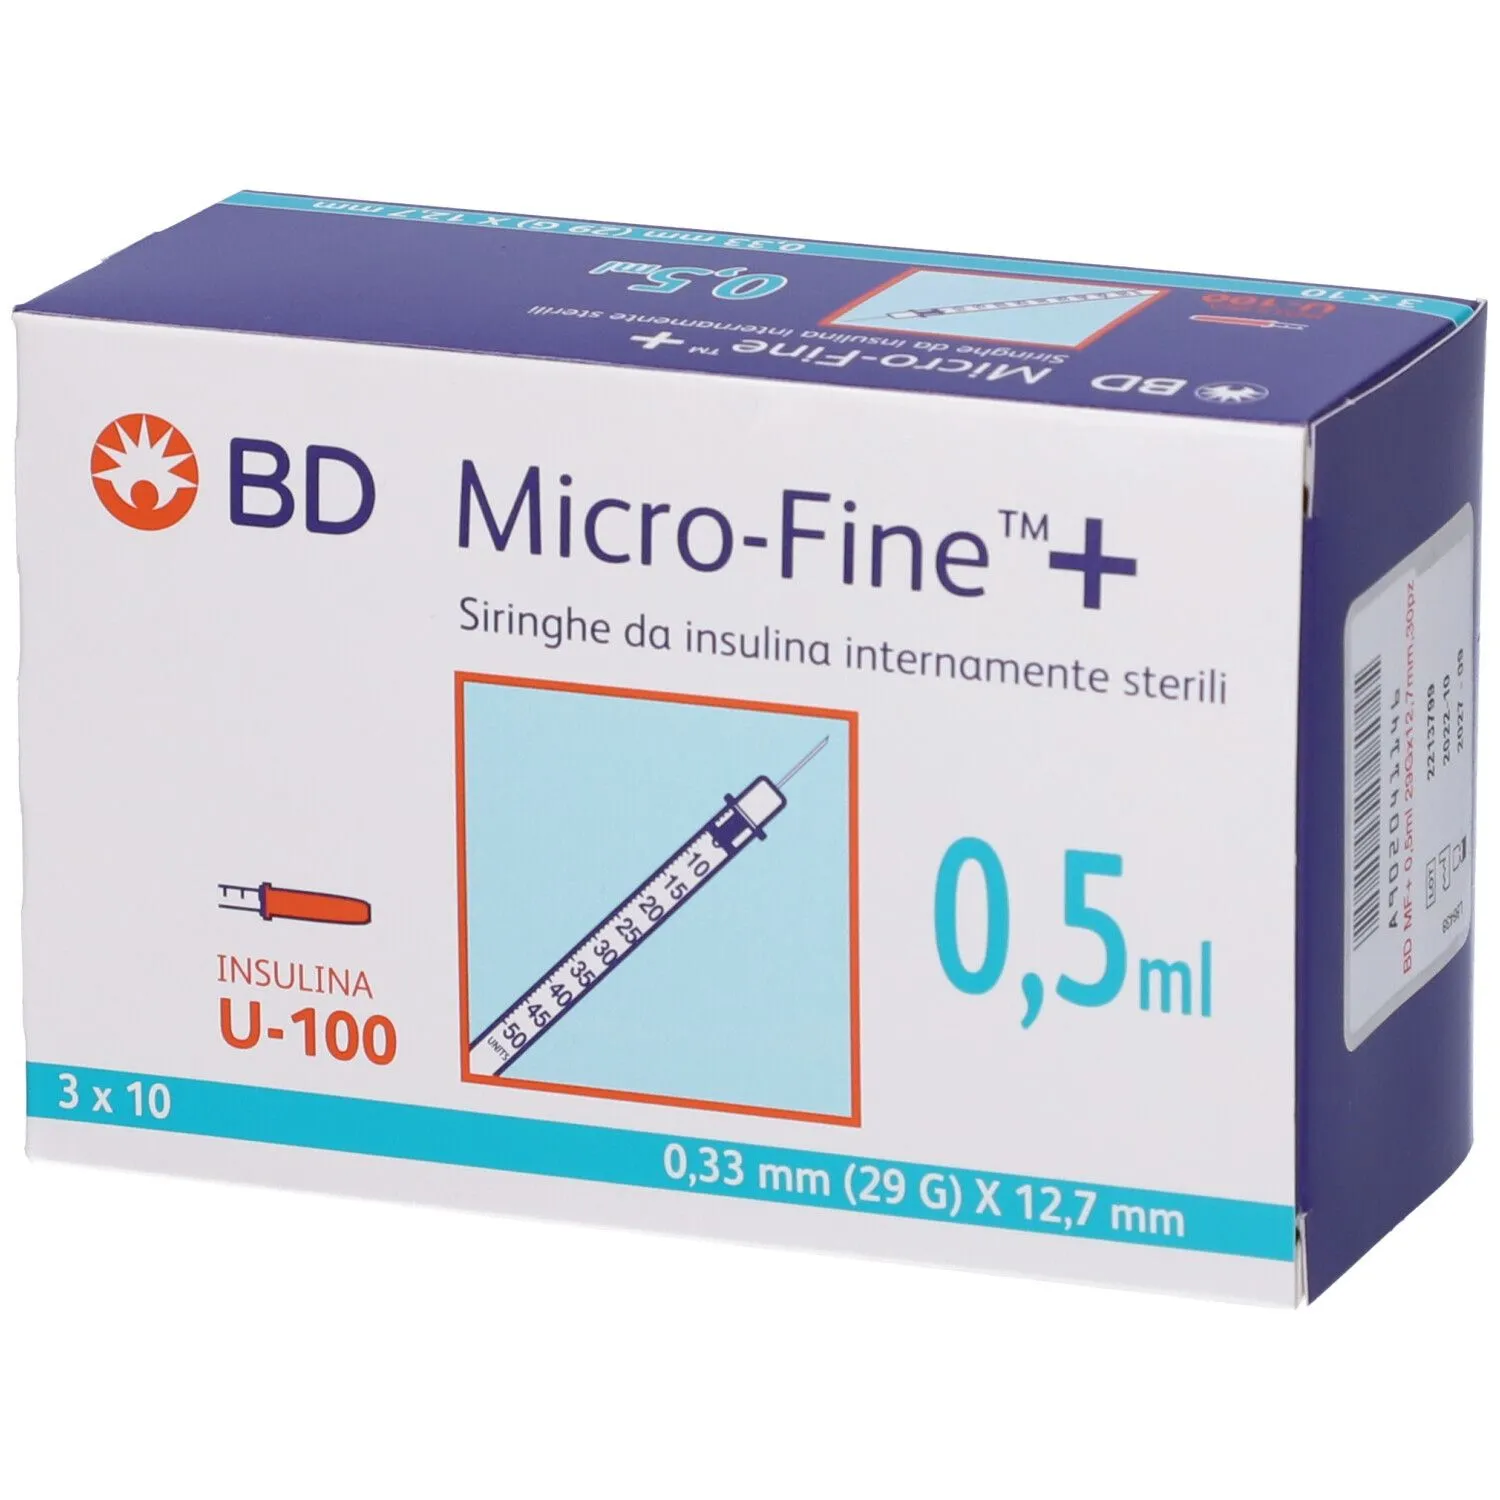  Micro-Fine™ + 0,5 ml 0,33 ml (29G) x 12,7 mm